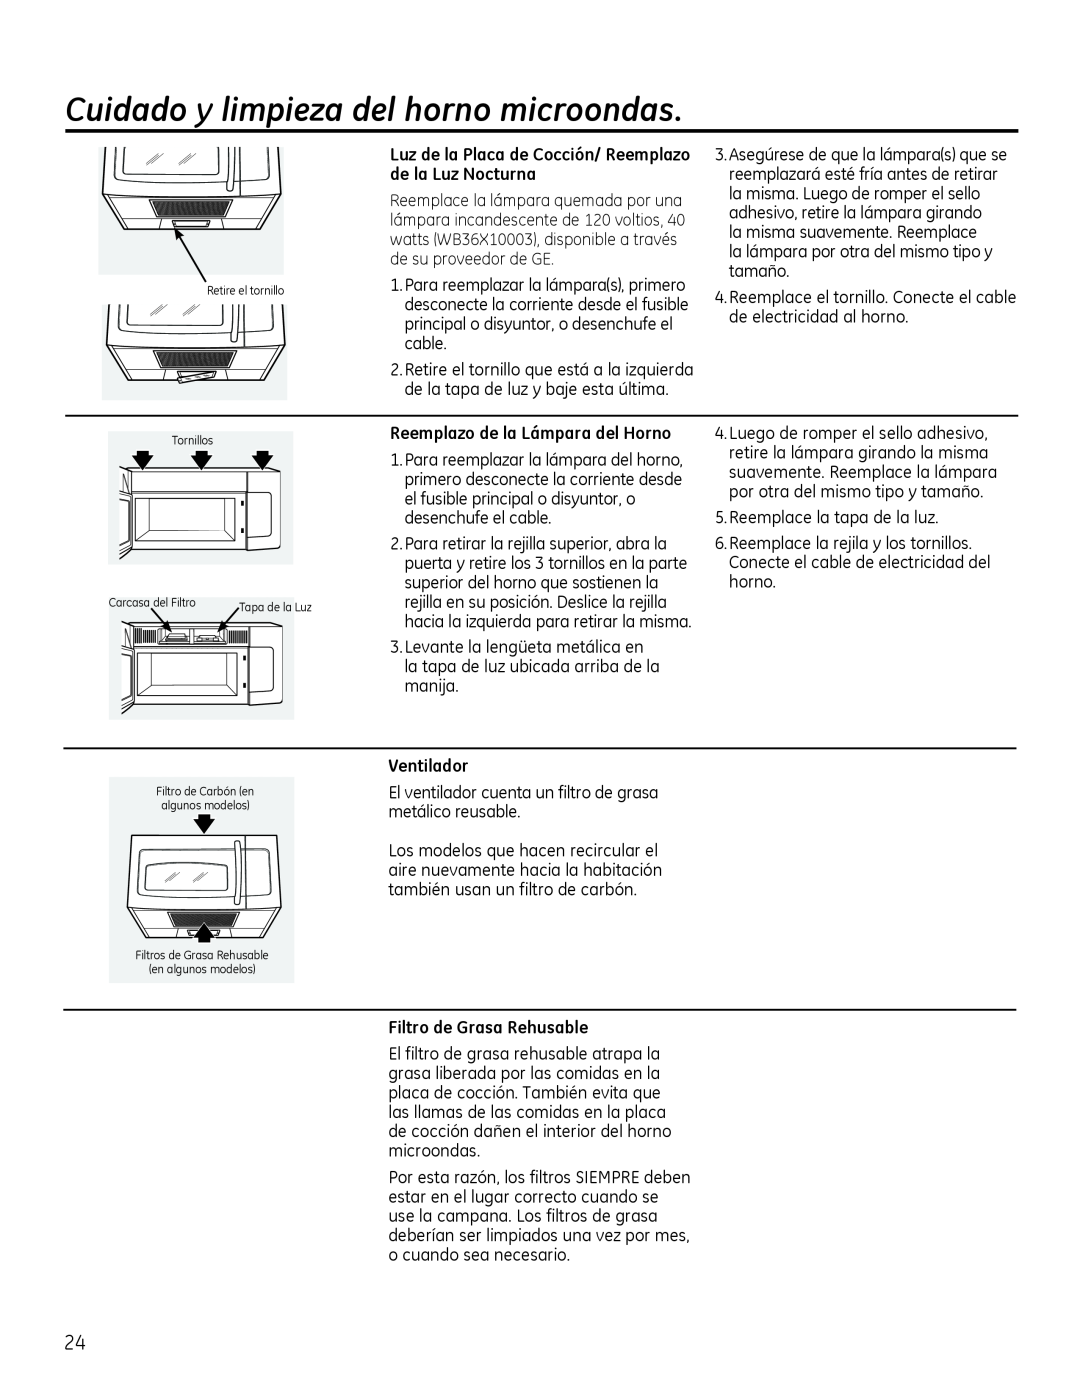 GE Microwave Oven owner manual Cuidado y limpieza del horno microondas, Reemplazo de la Lámpara del Horno, Ventilador 